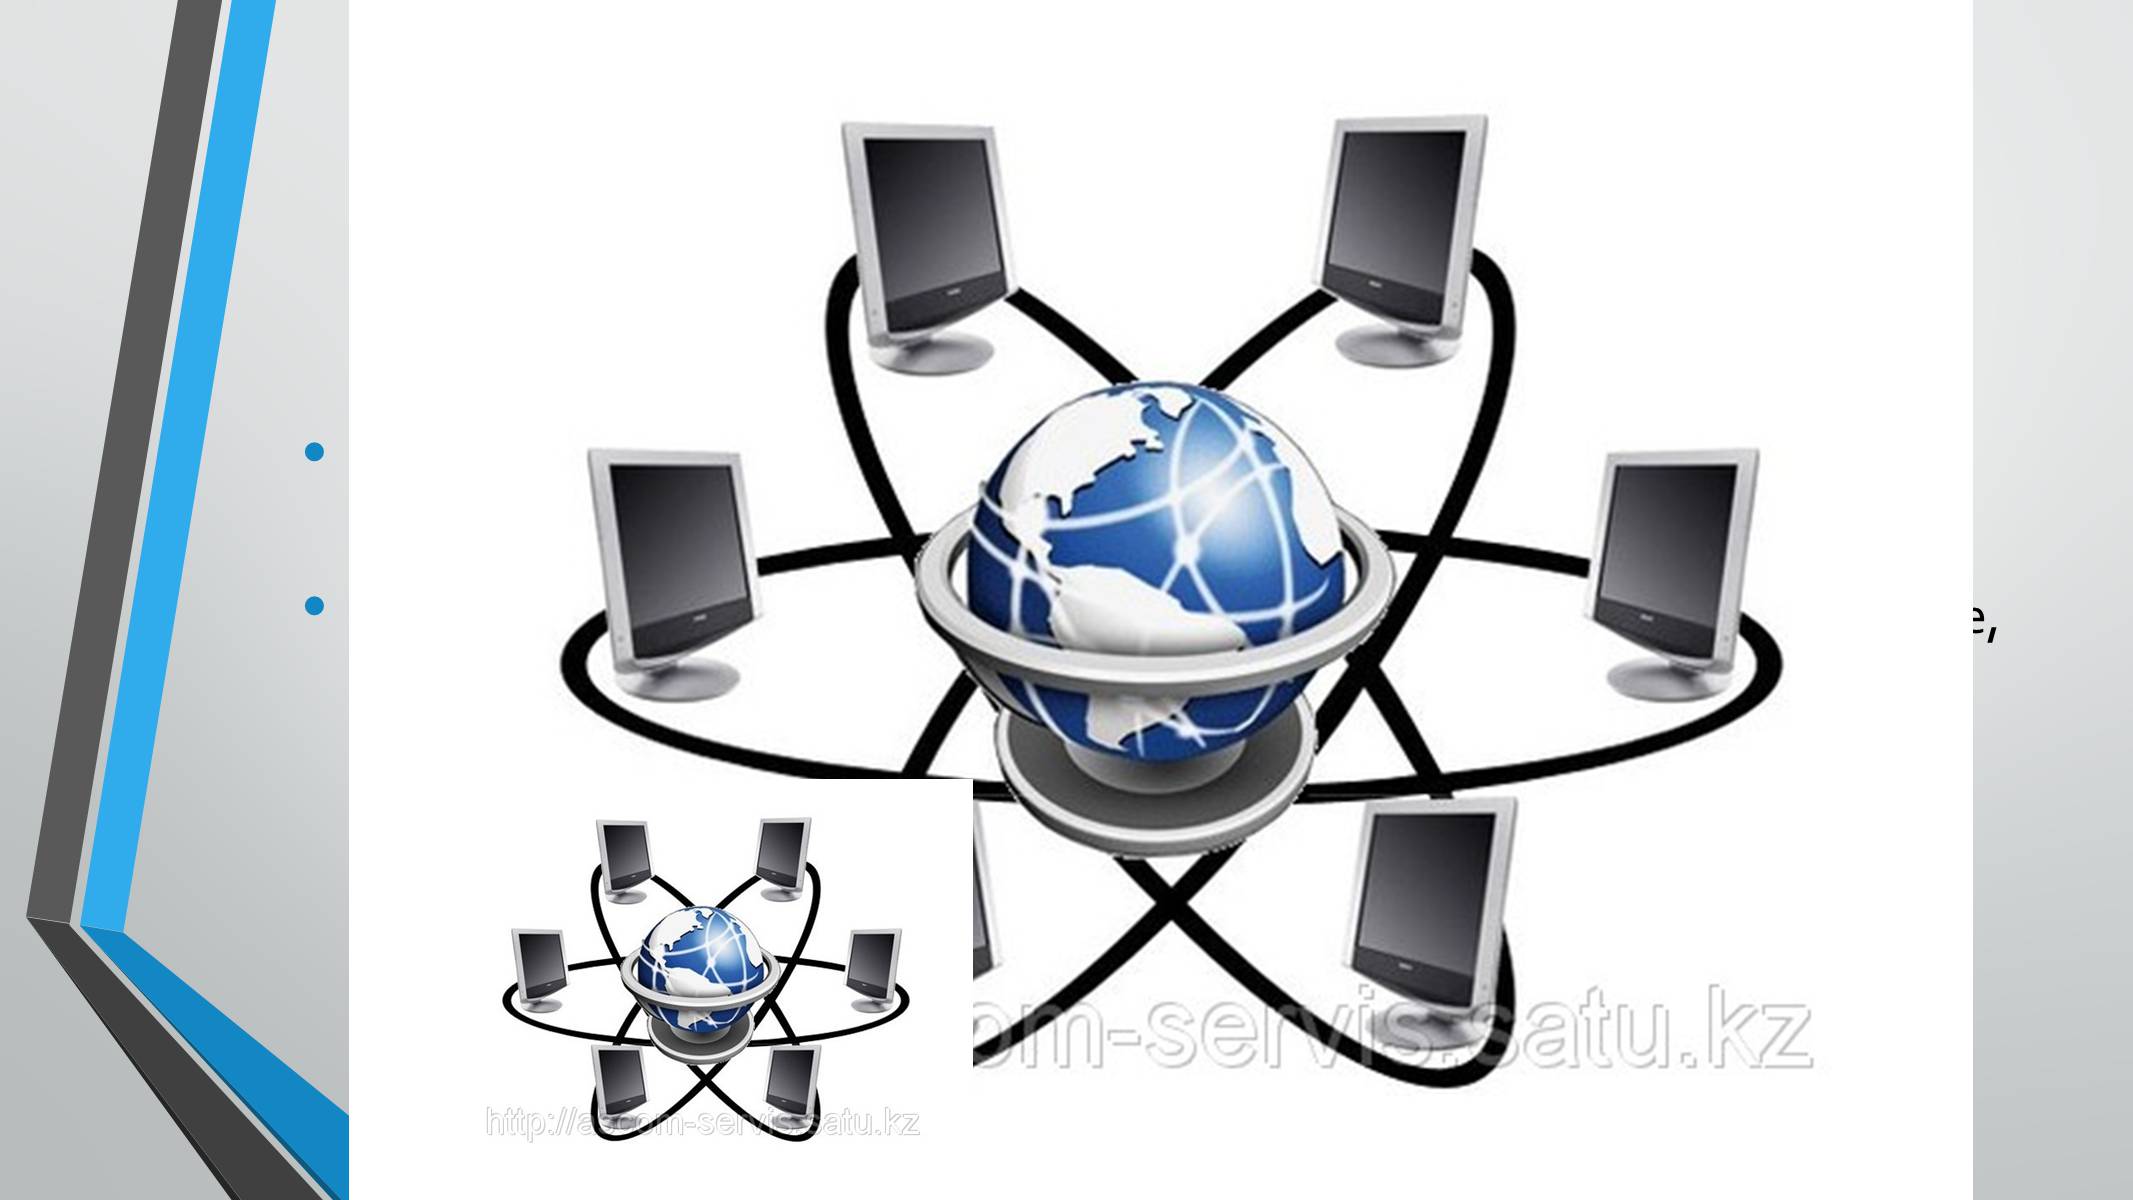 Вопросы безопасности сетей. Безопасность в сети интернет. Глобальная сеть интернет. Безопасный интернет. Эмблемы связанные с информатикой.